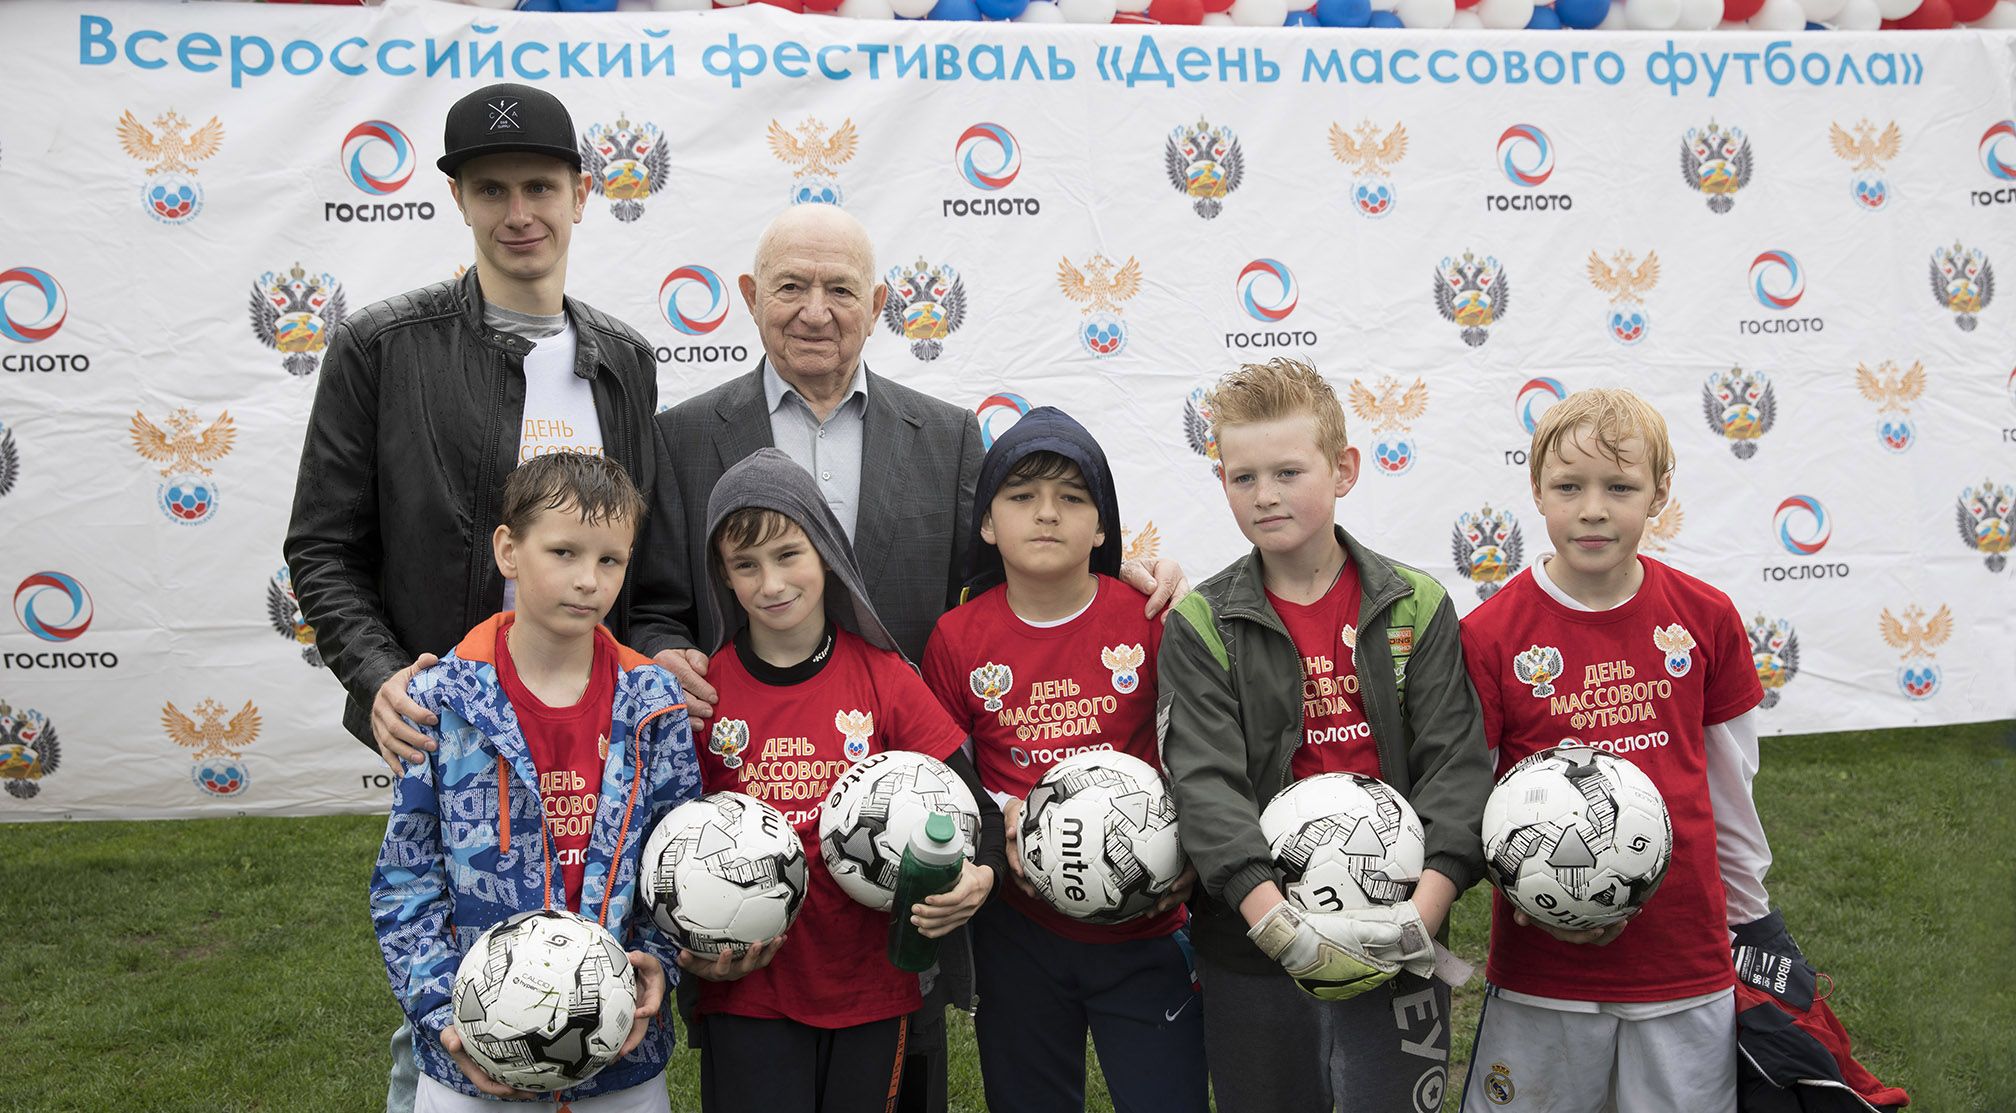 «Гослото» поддержало всероссийский «День массового футбола»